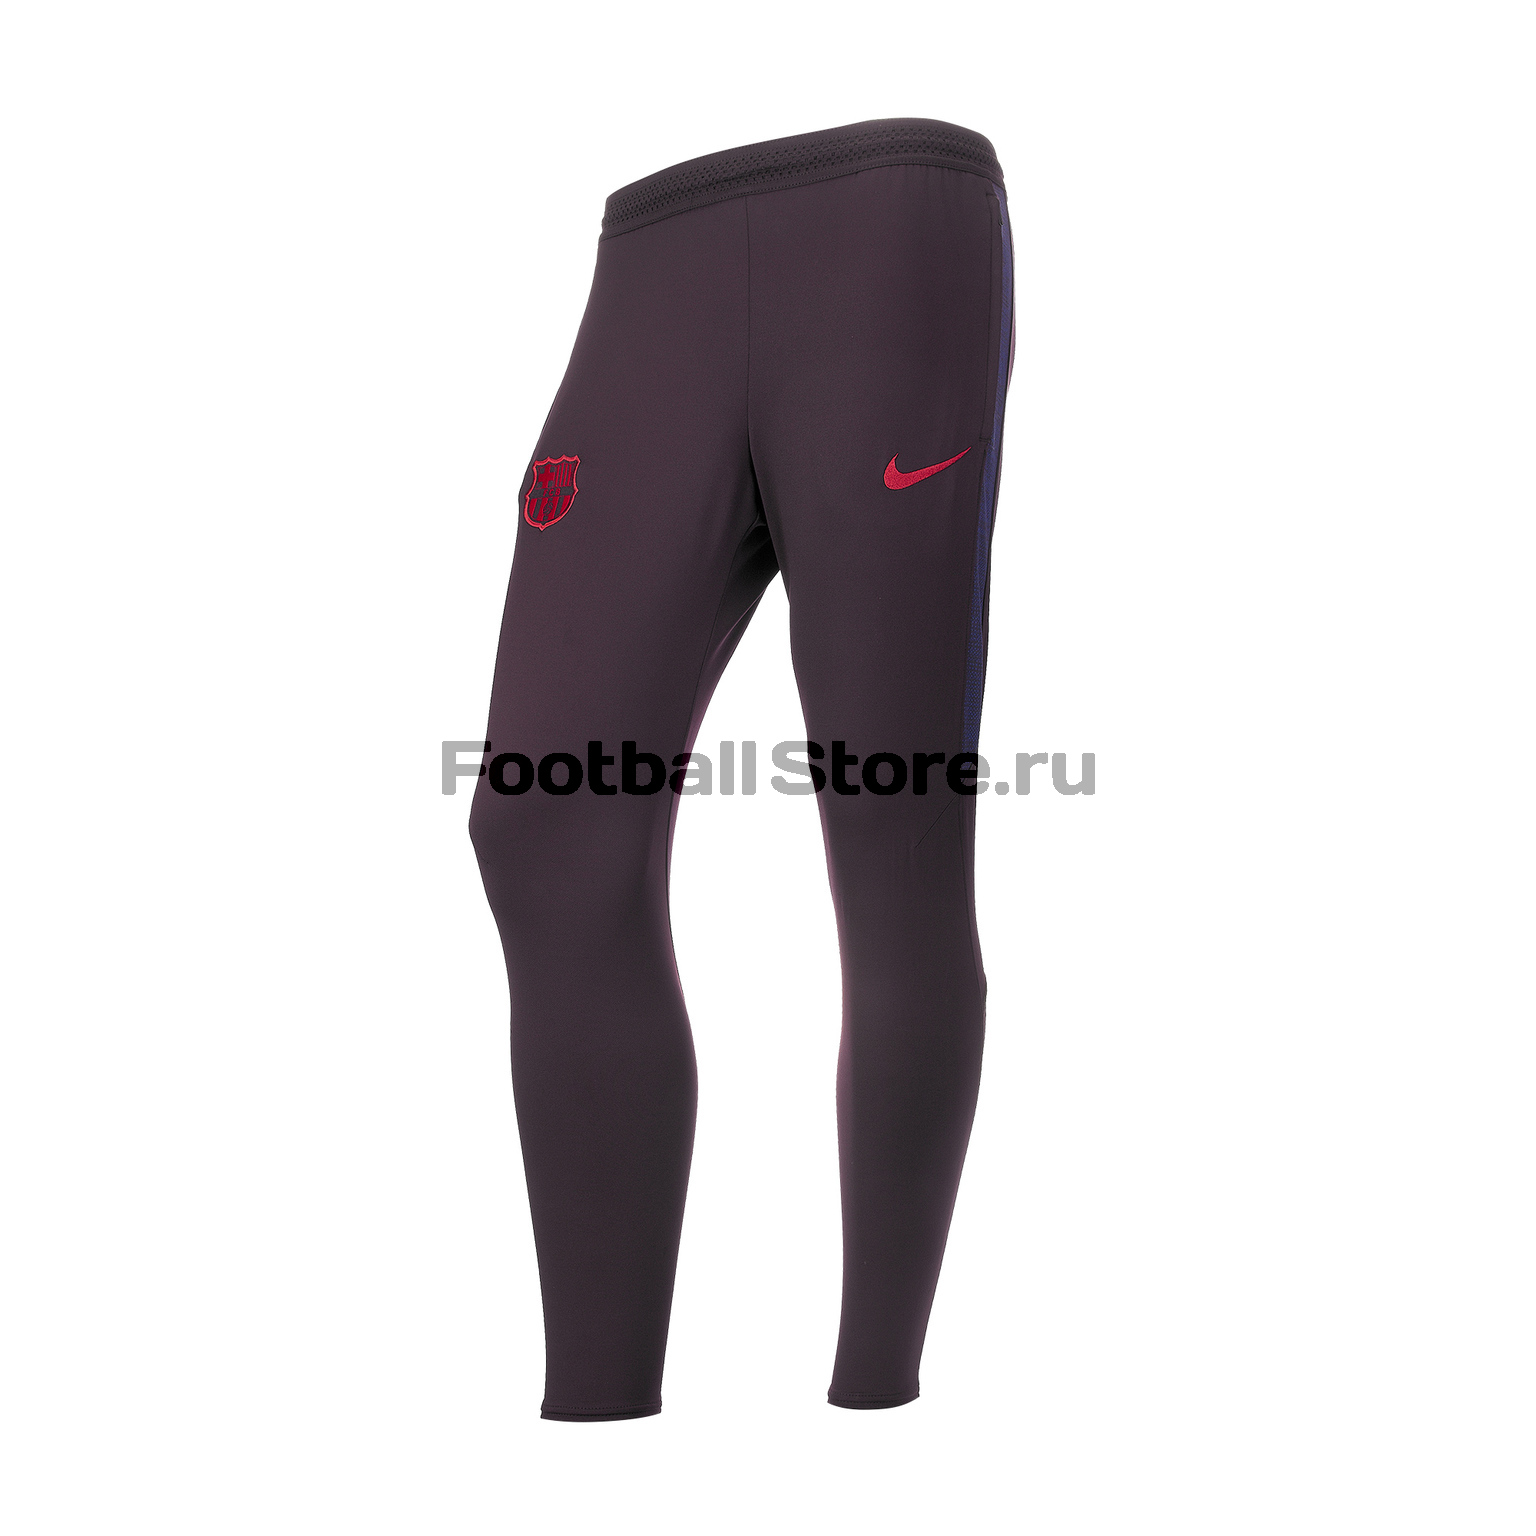 Брюки Nike Barcelona Dry Pant AO5321-659